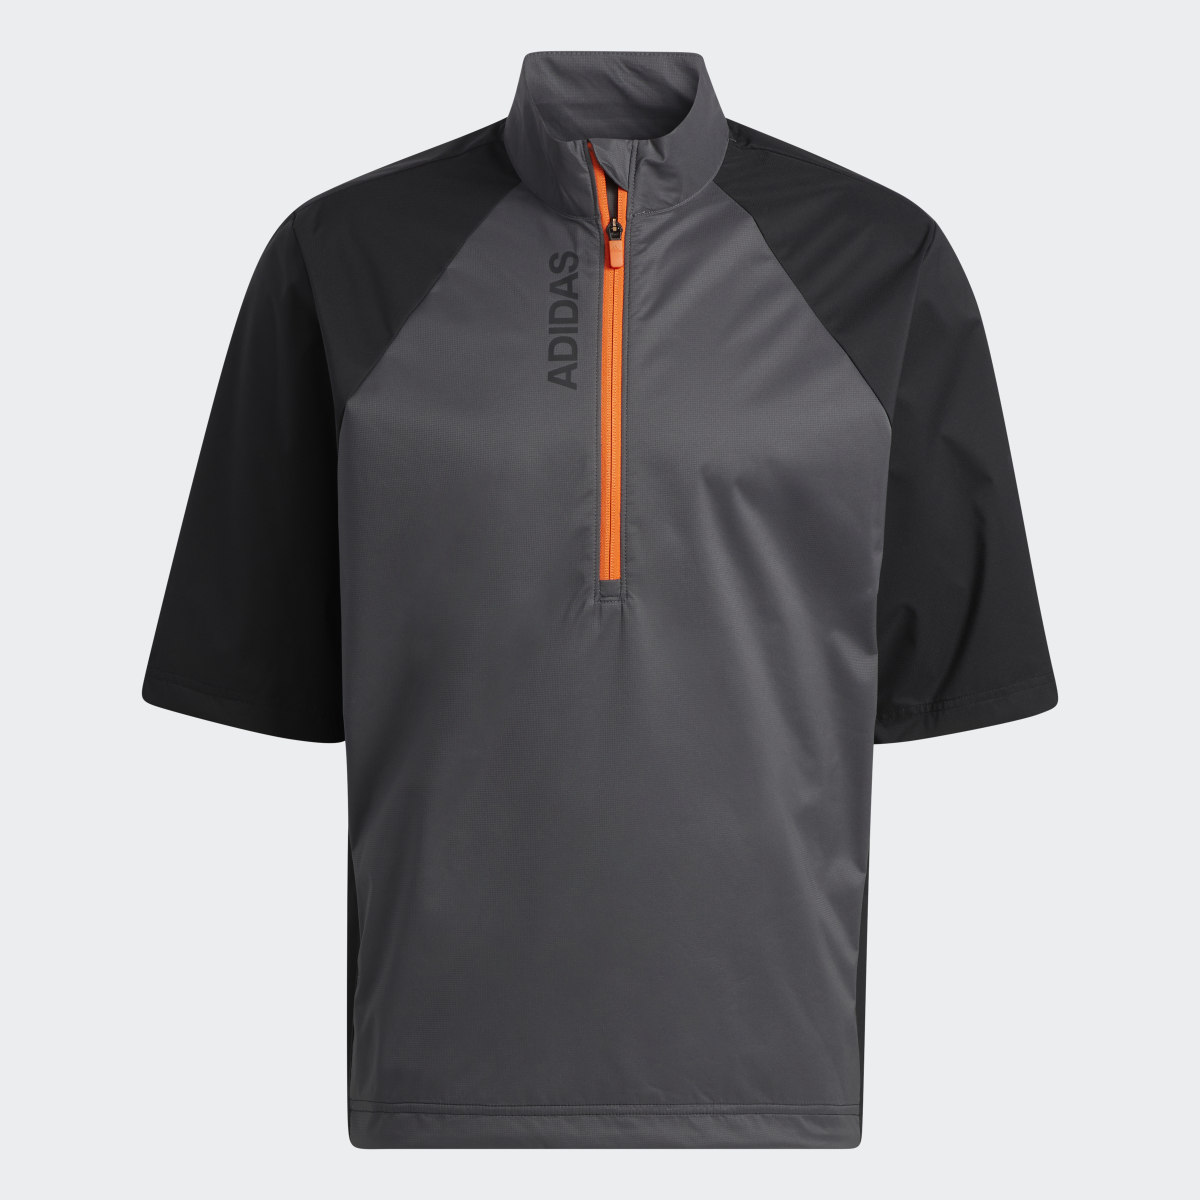 Adidas Provisional Short Sleeve Jacket. 5